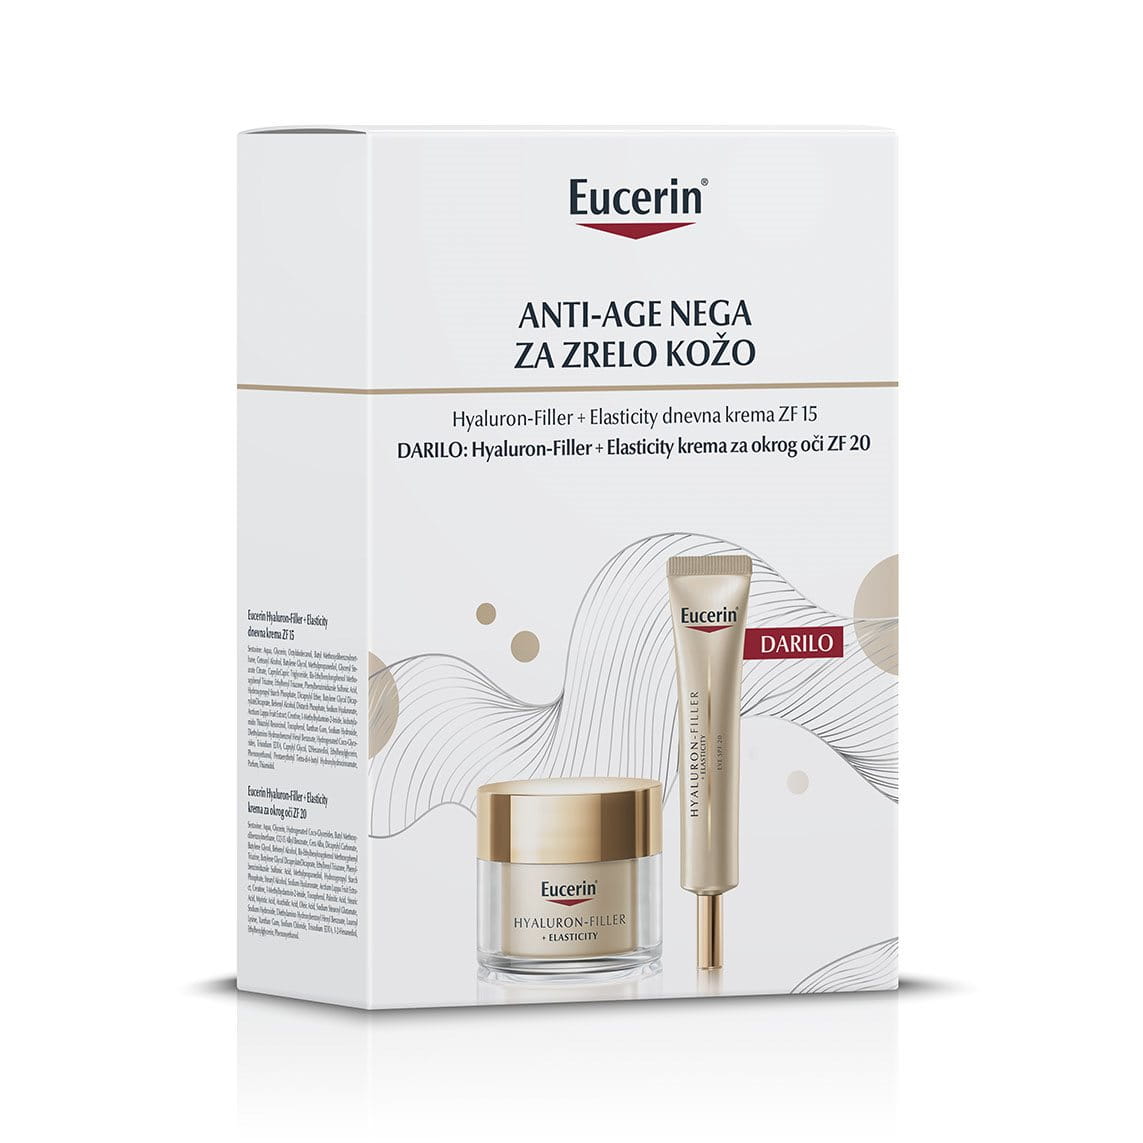 Hyaluron-Filler + Elasticity anti-age nega za zrelo kožo